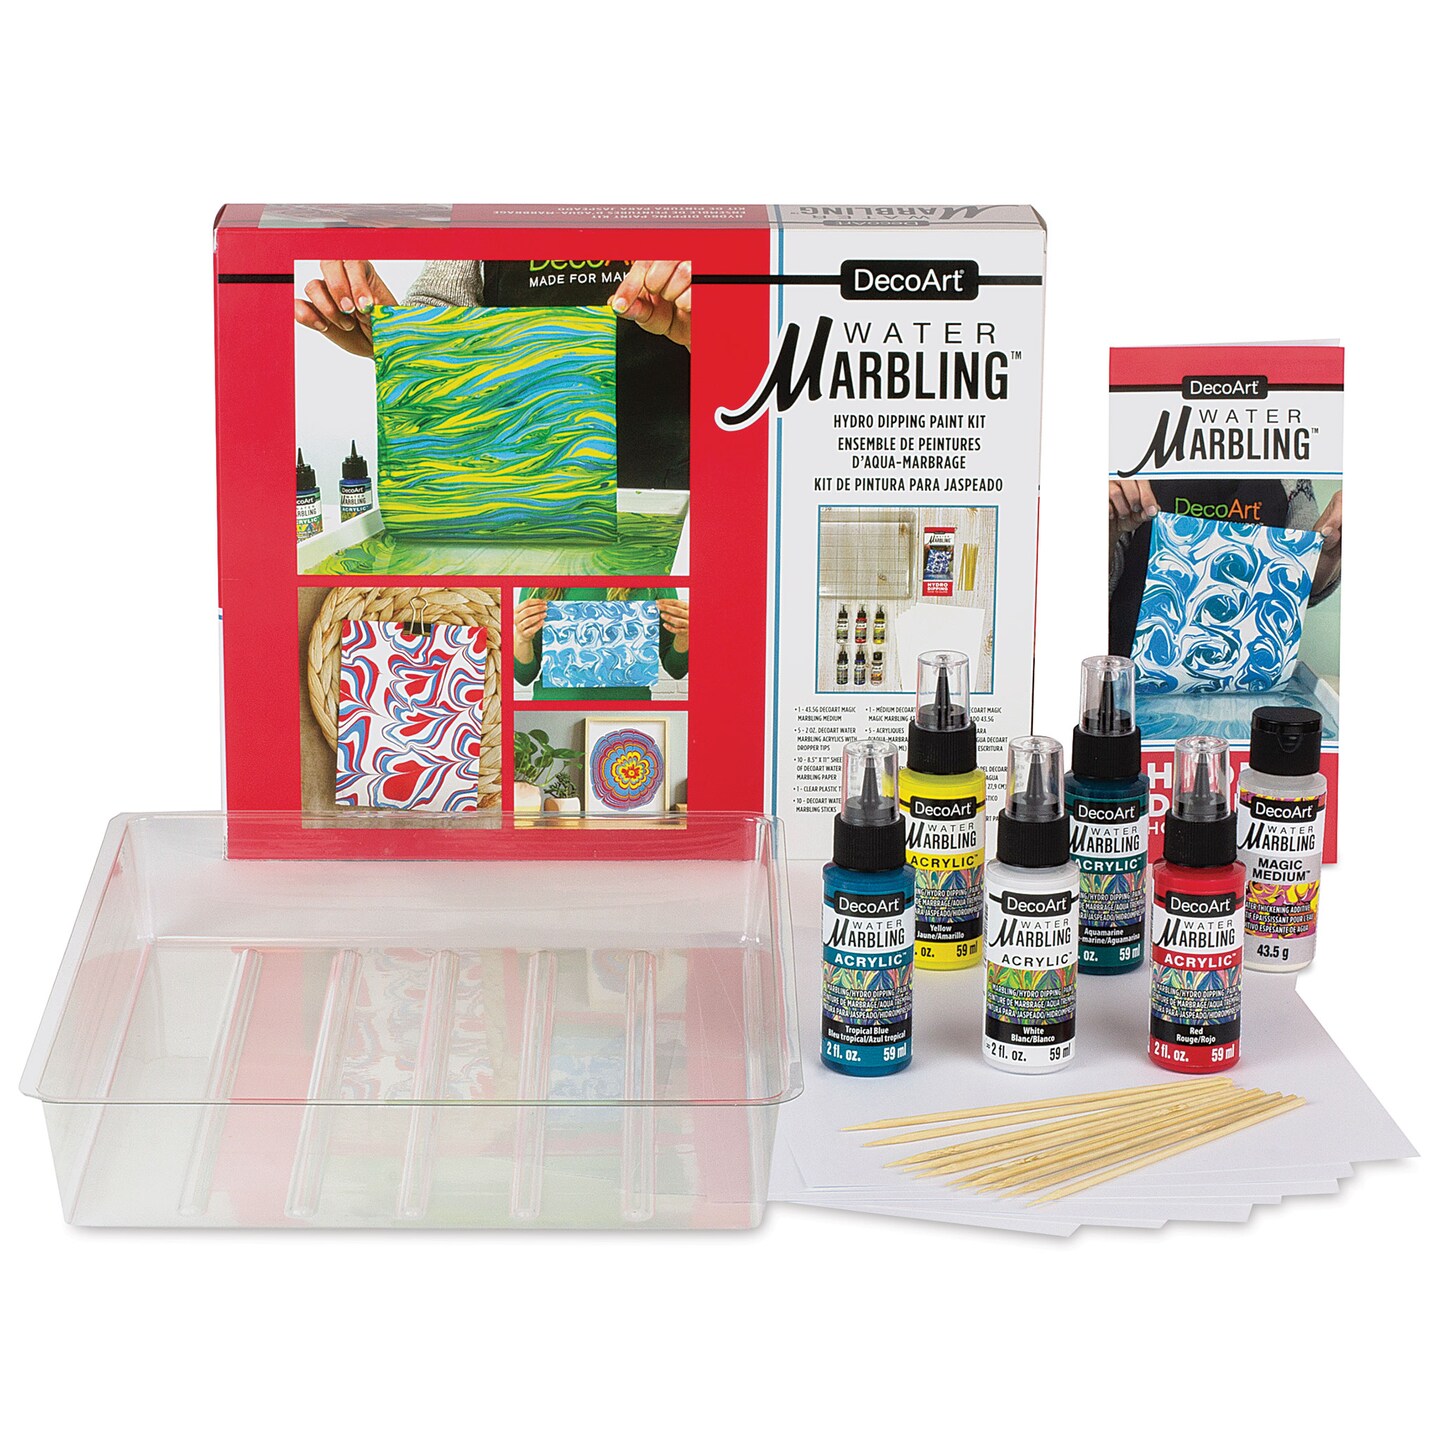 DecoArt Water Marbling Acrylic Paint - Starter Kit